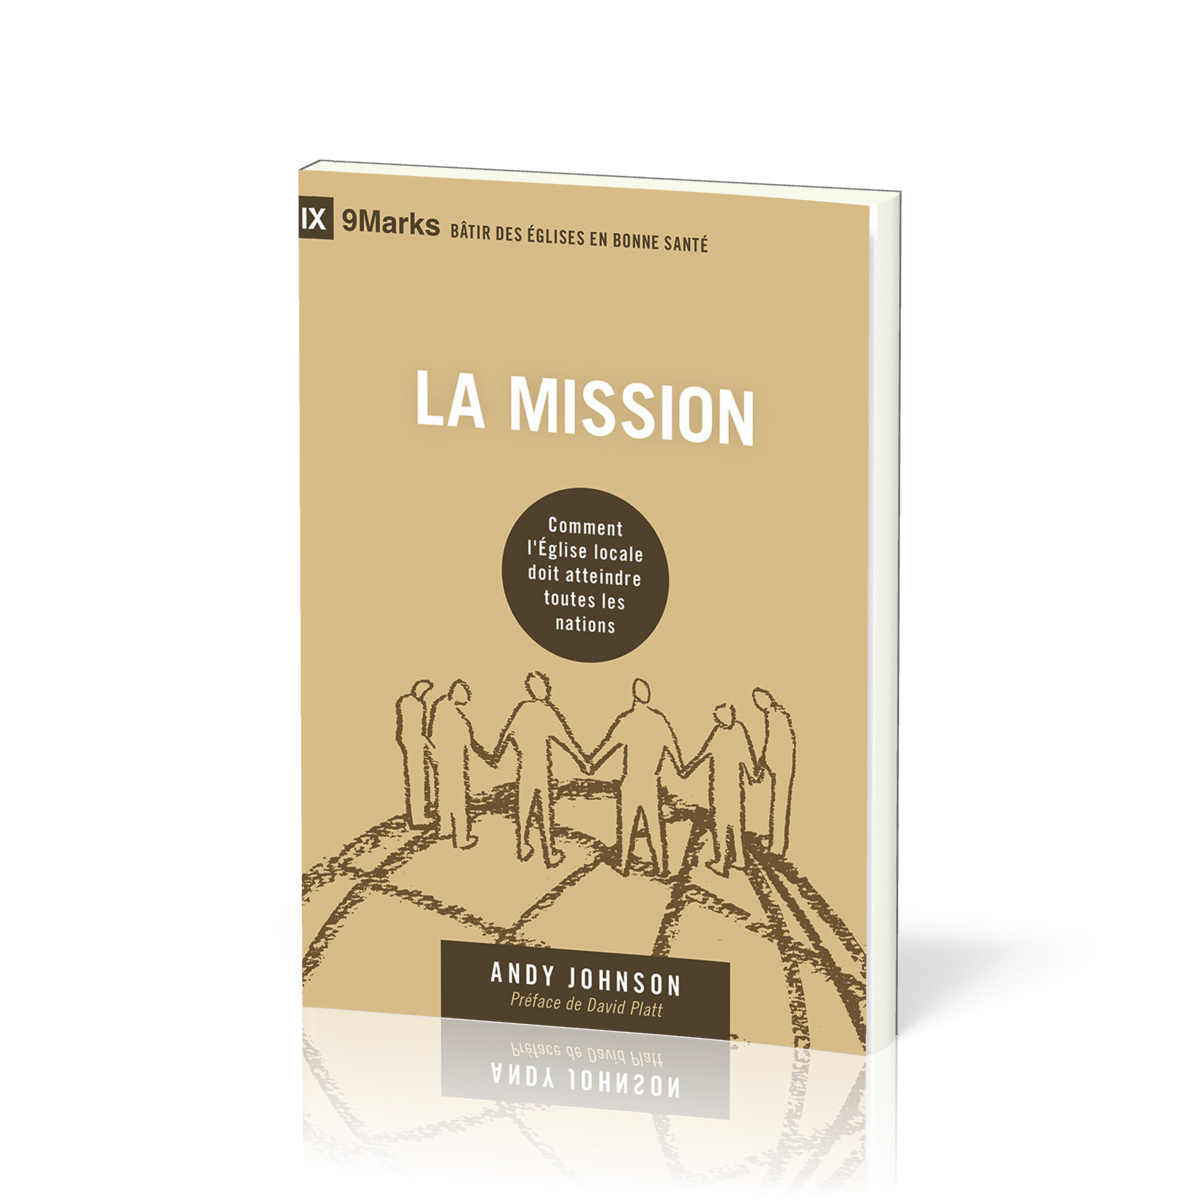 Mission (La) - Comment l'Église locale doit atteindre toutes les nations [coll. 9Marks Bâtir des Églises en bonne santé]